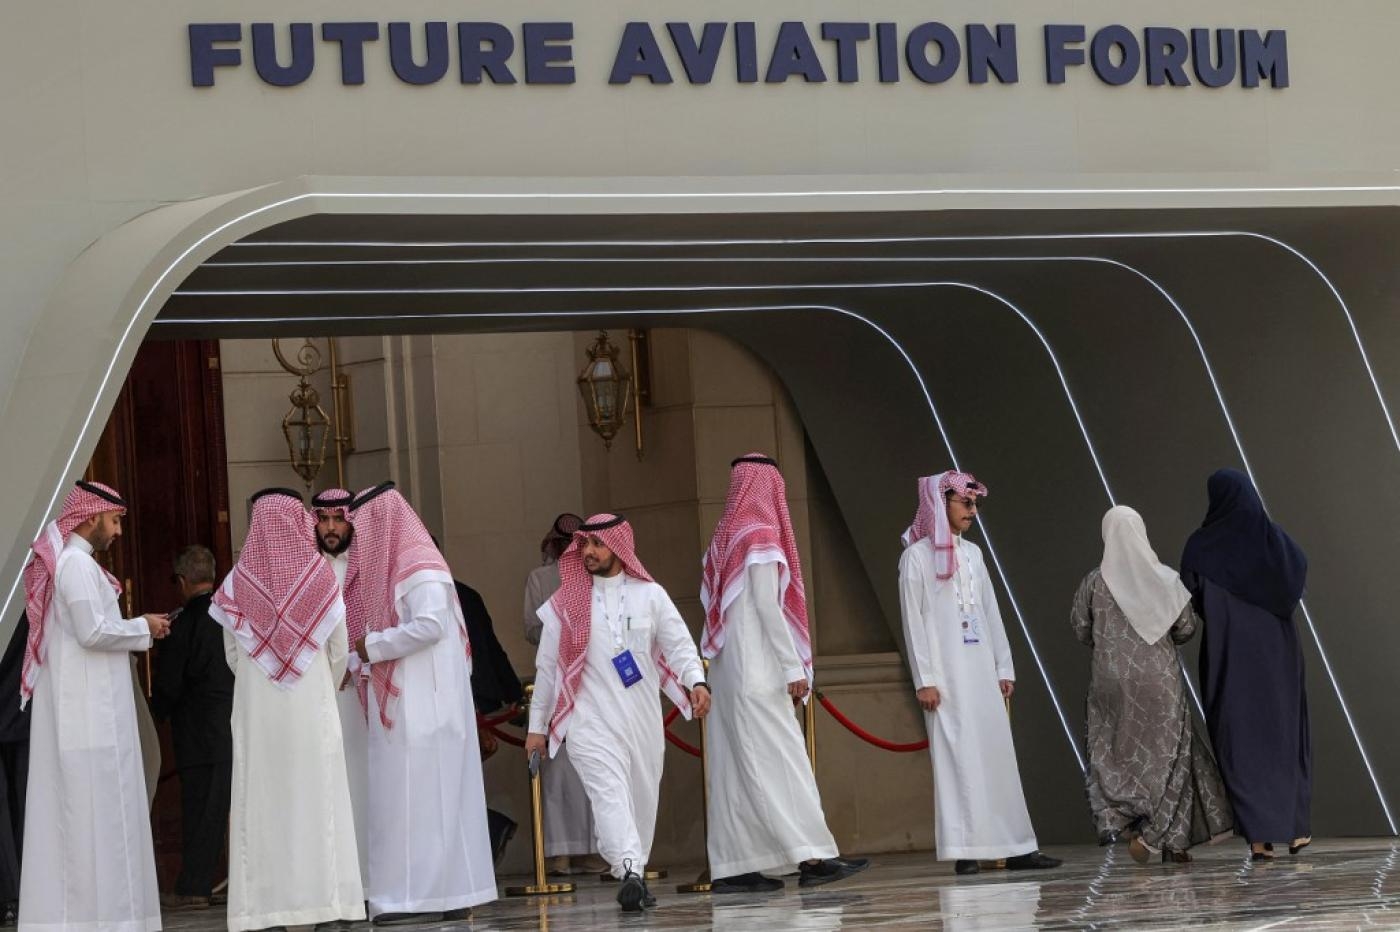 Des employés saoudiens accueillent des visiteurs au Future Aviation Forum, le 9 mai 2022 à Riyad (AFP)